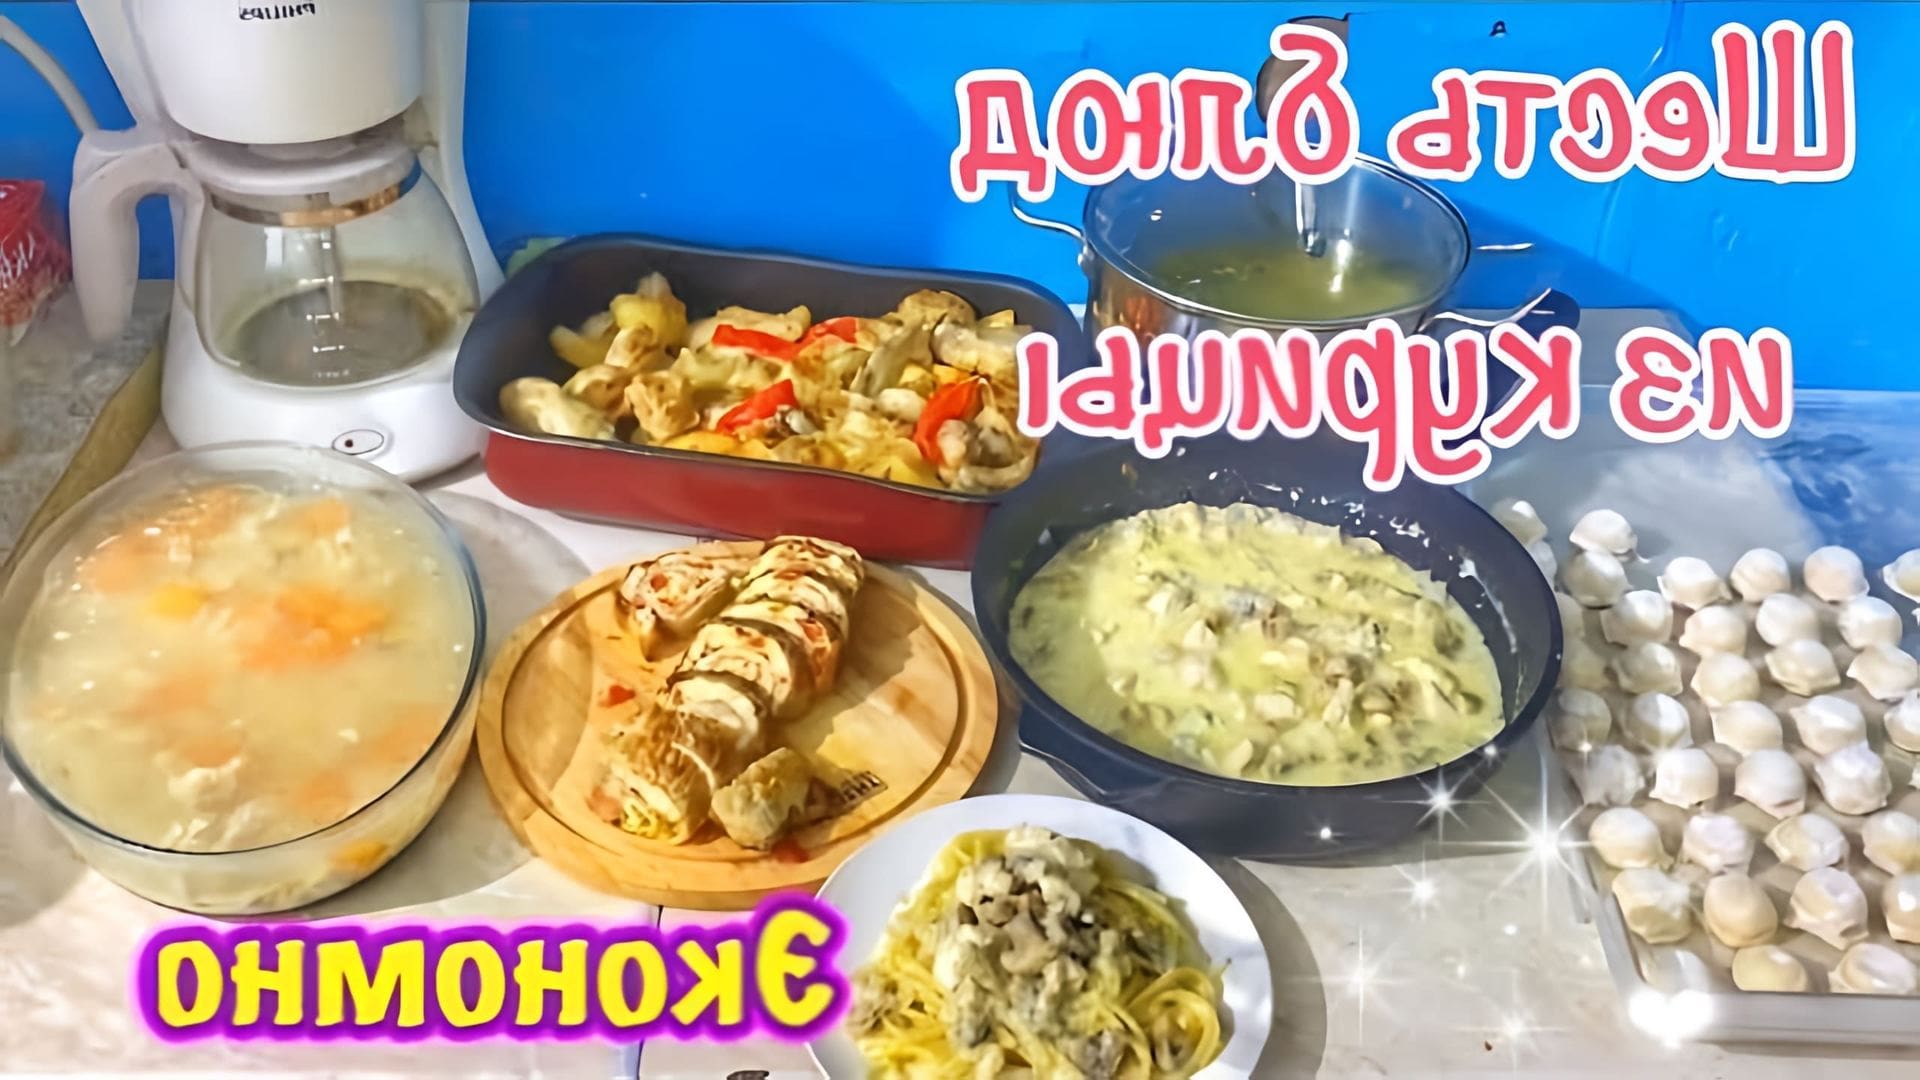 В этом видео демонстрируется процесс приготовления шести блюд из одной курицы